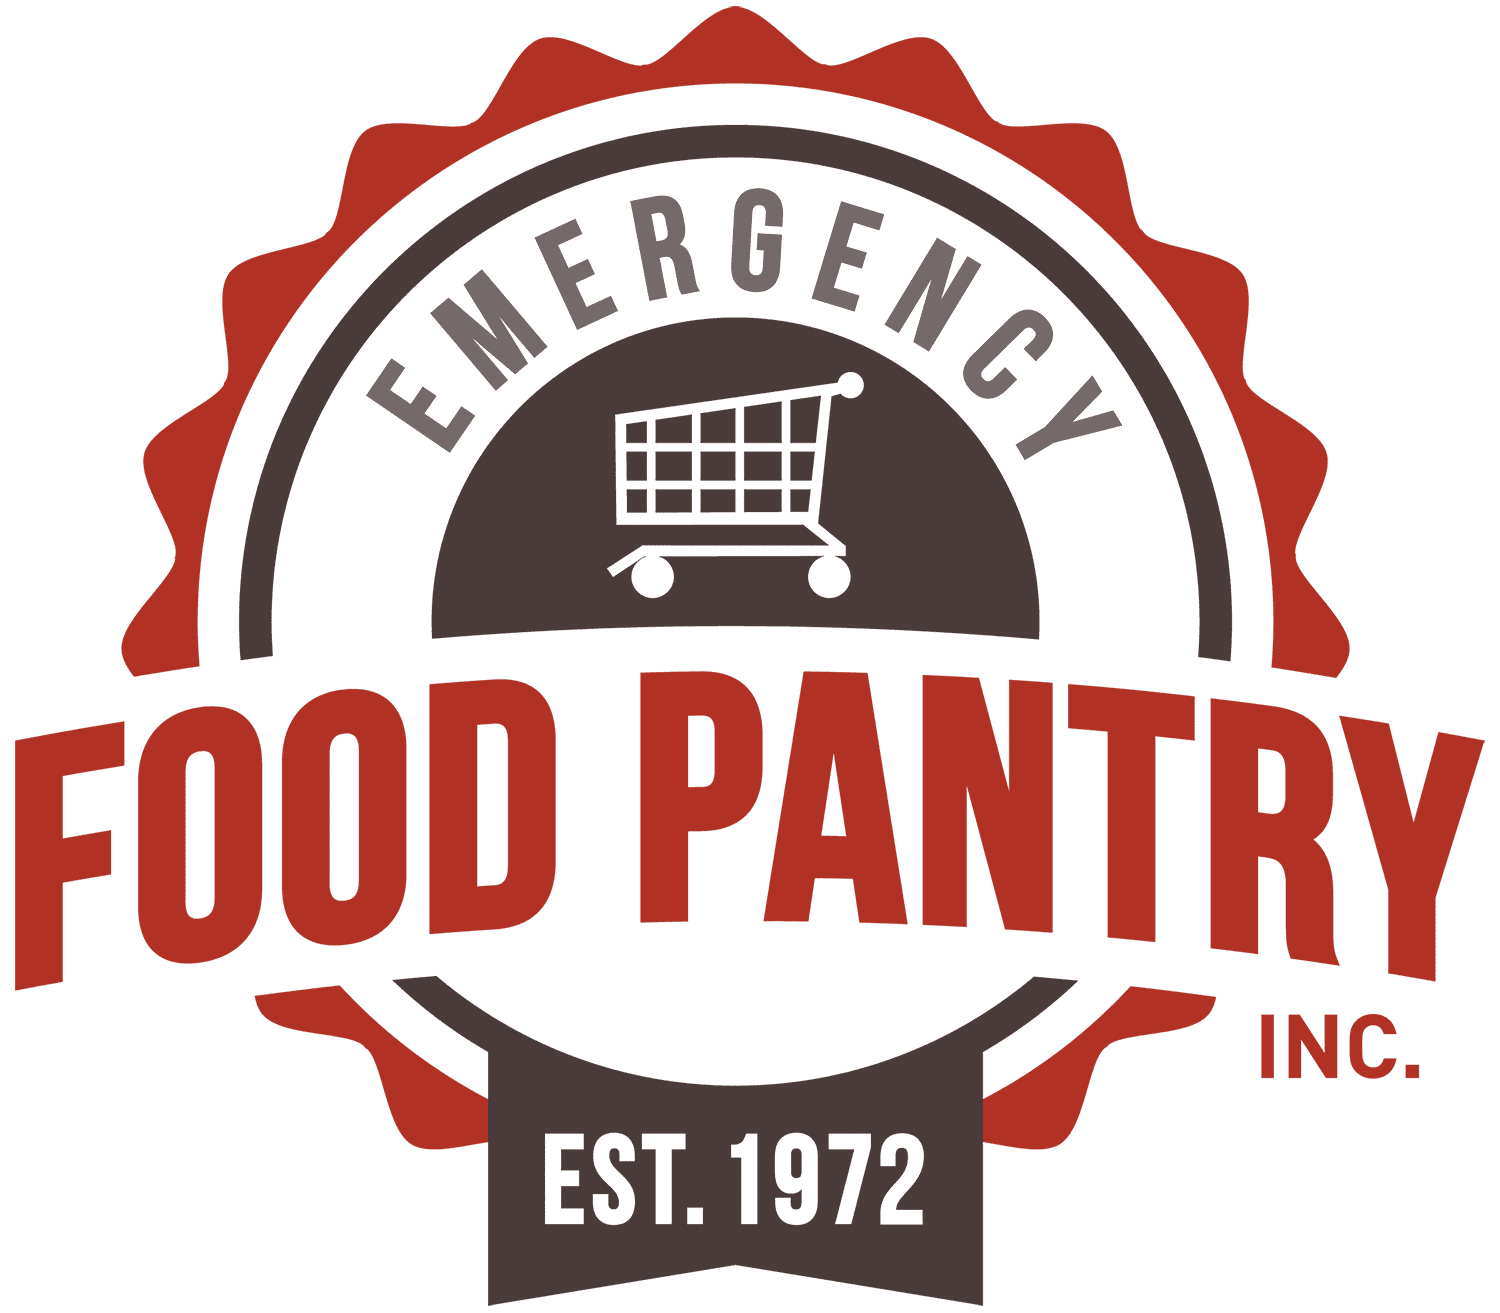 Emergency Food Pantry